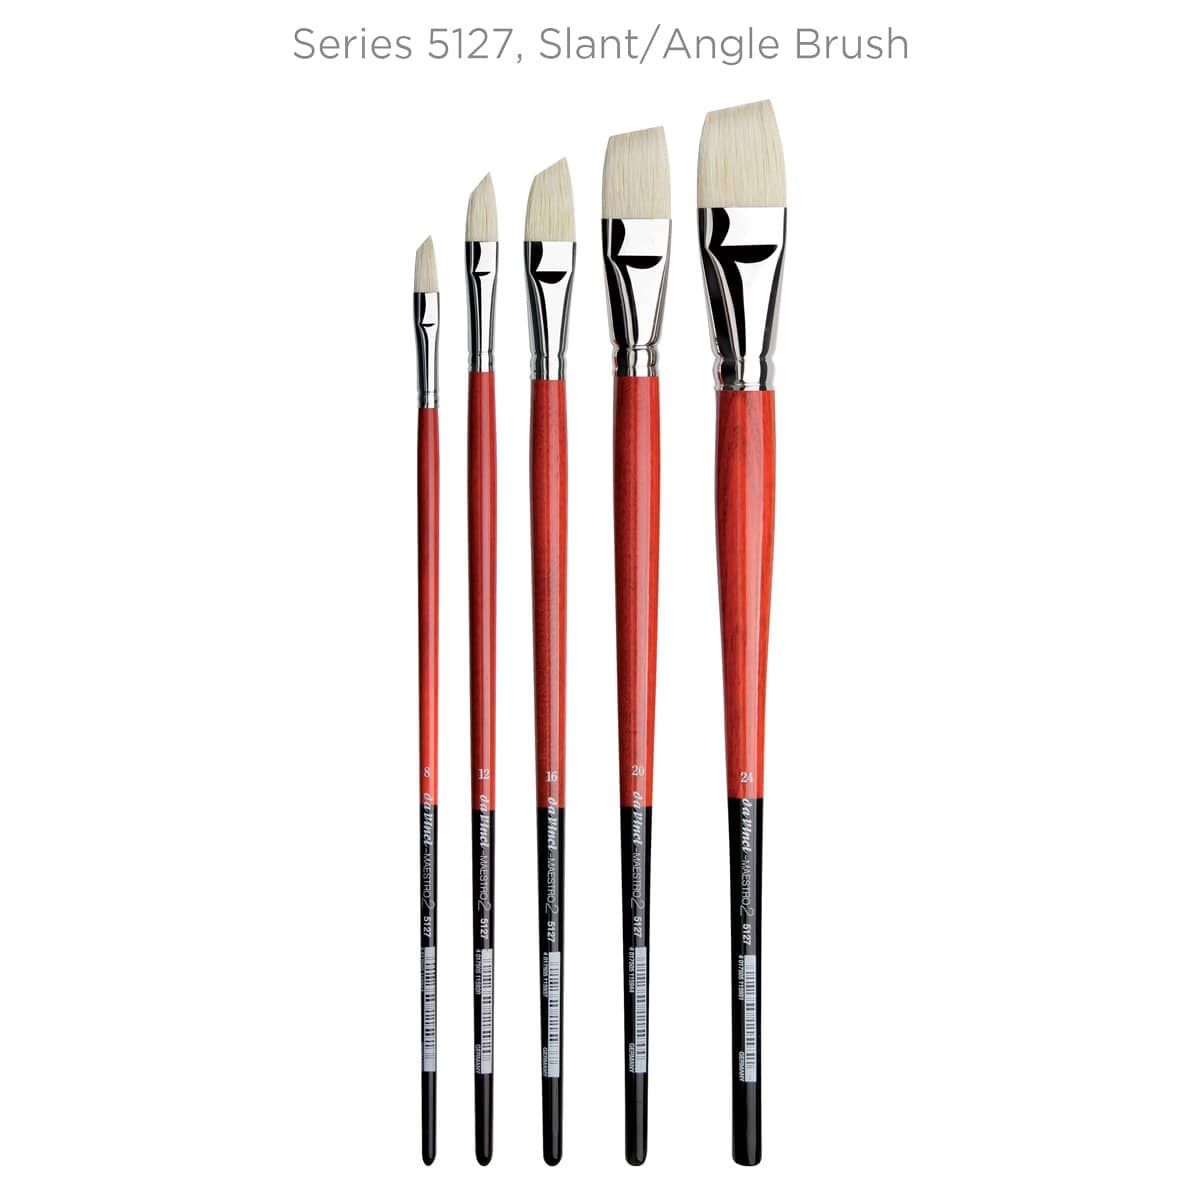 Series 5127 Slant/Angle Brushes